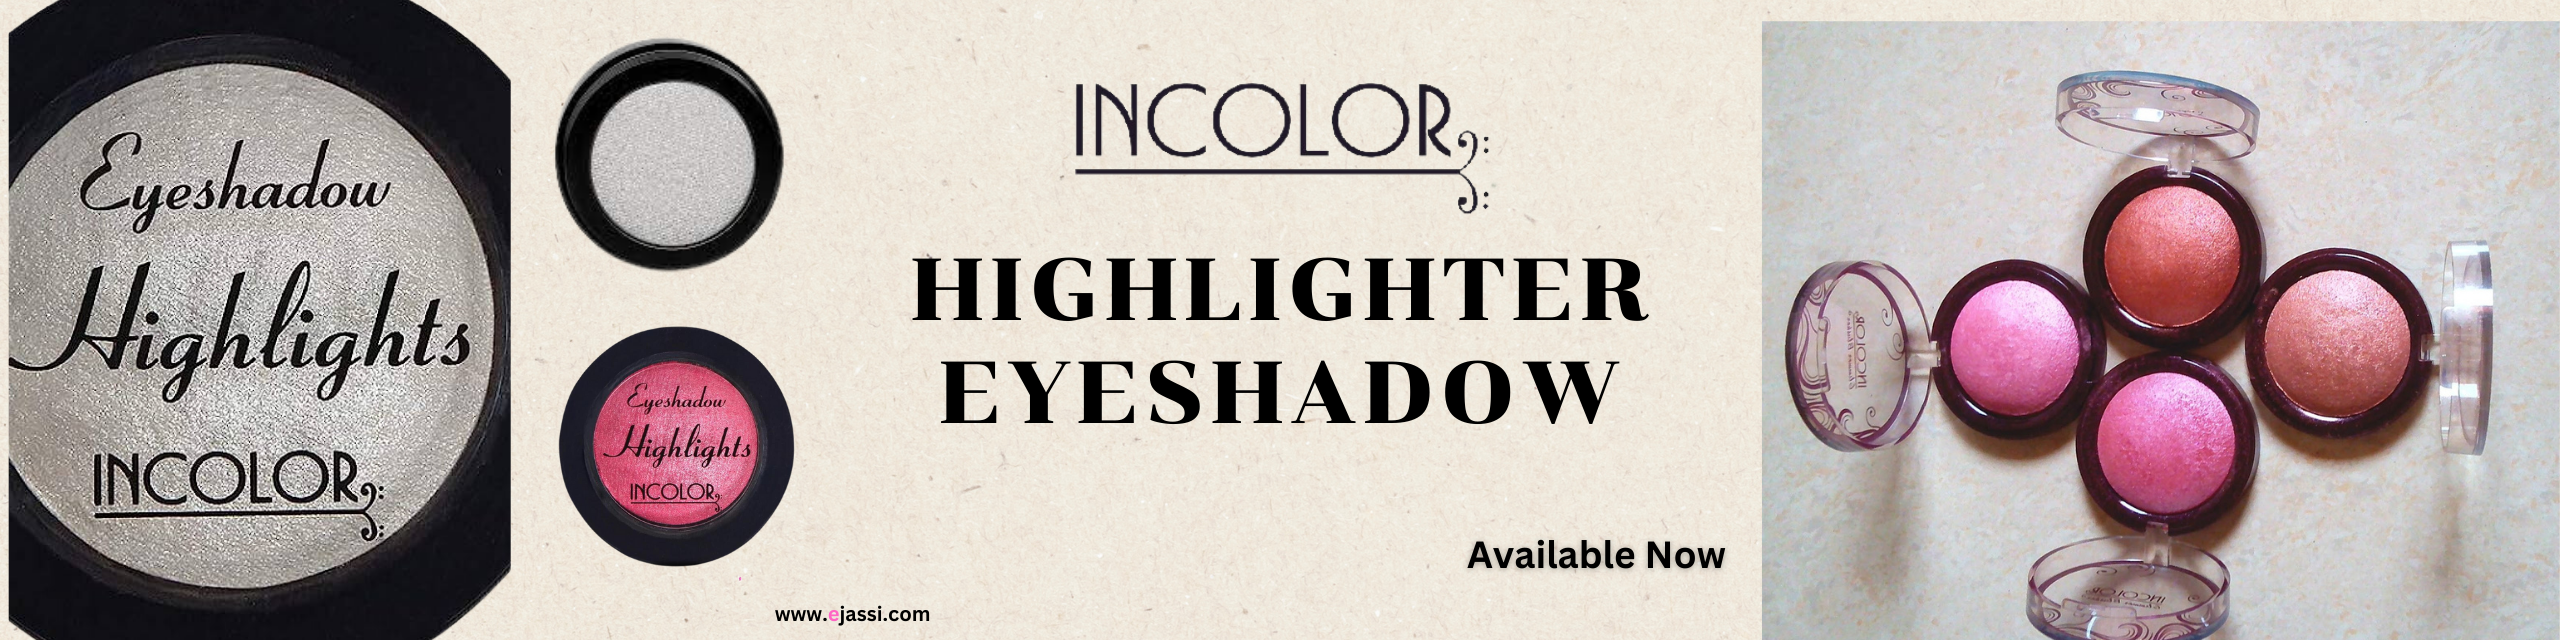 INCOLOR Eyeshadow